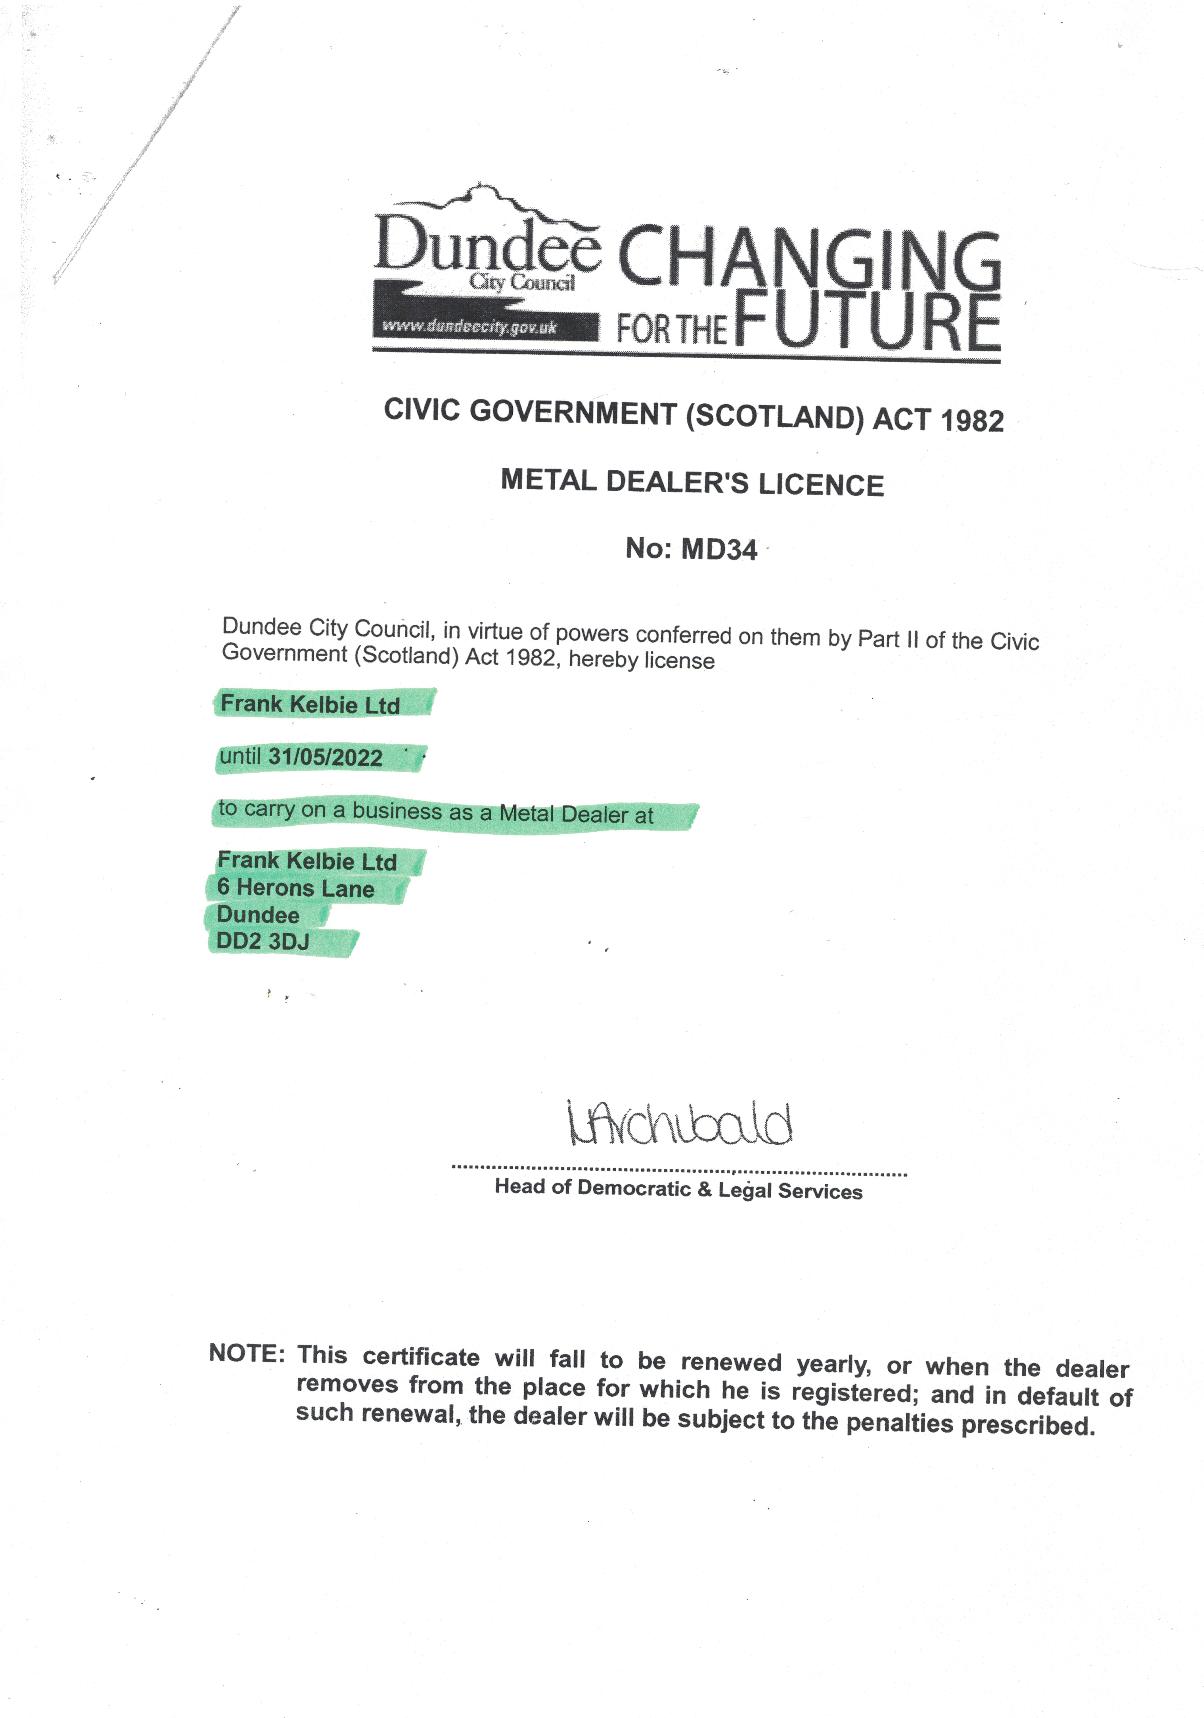 Frank Kelbie - metal dealers license